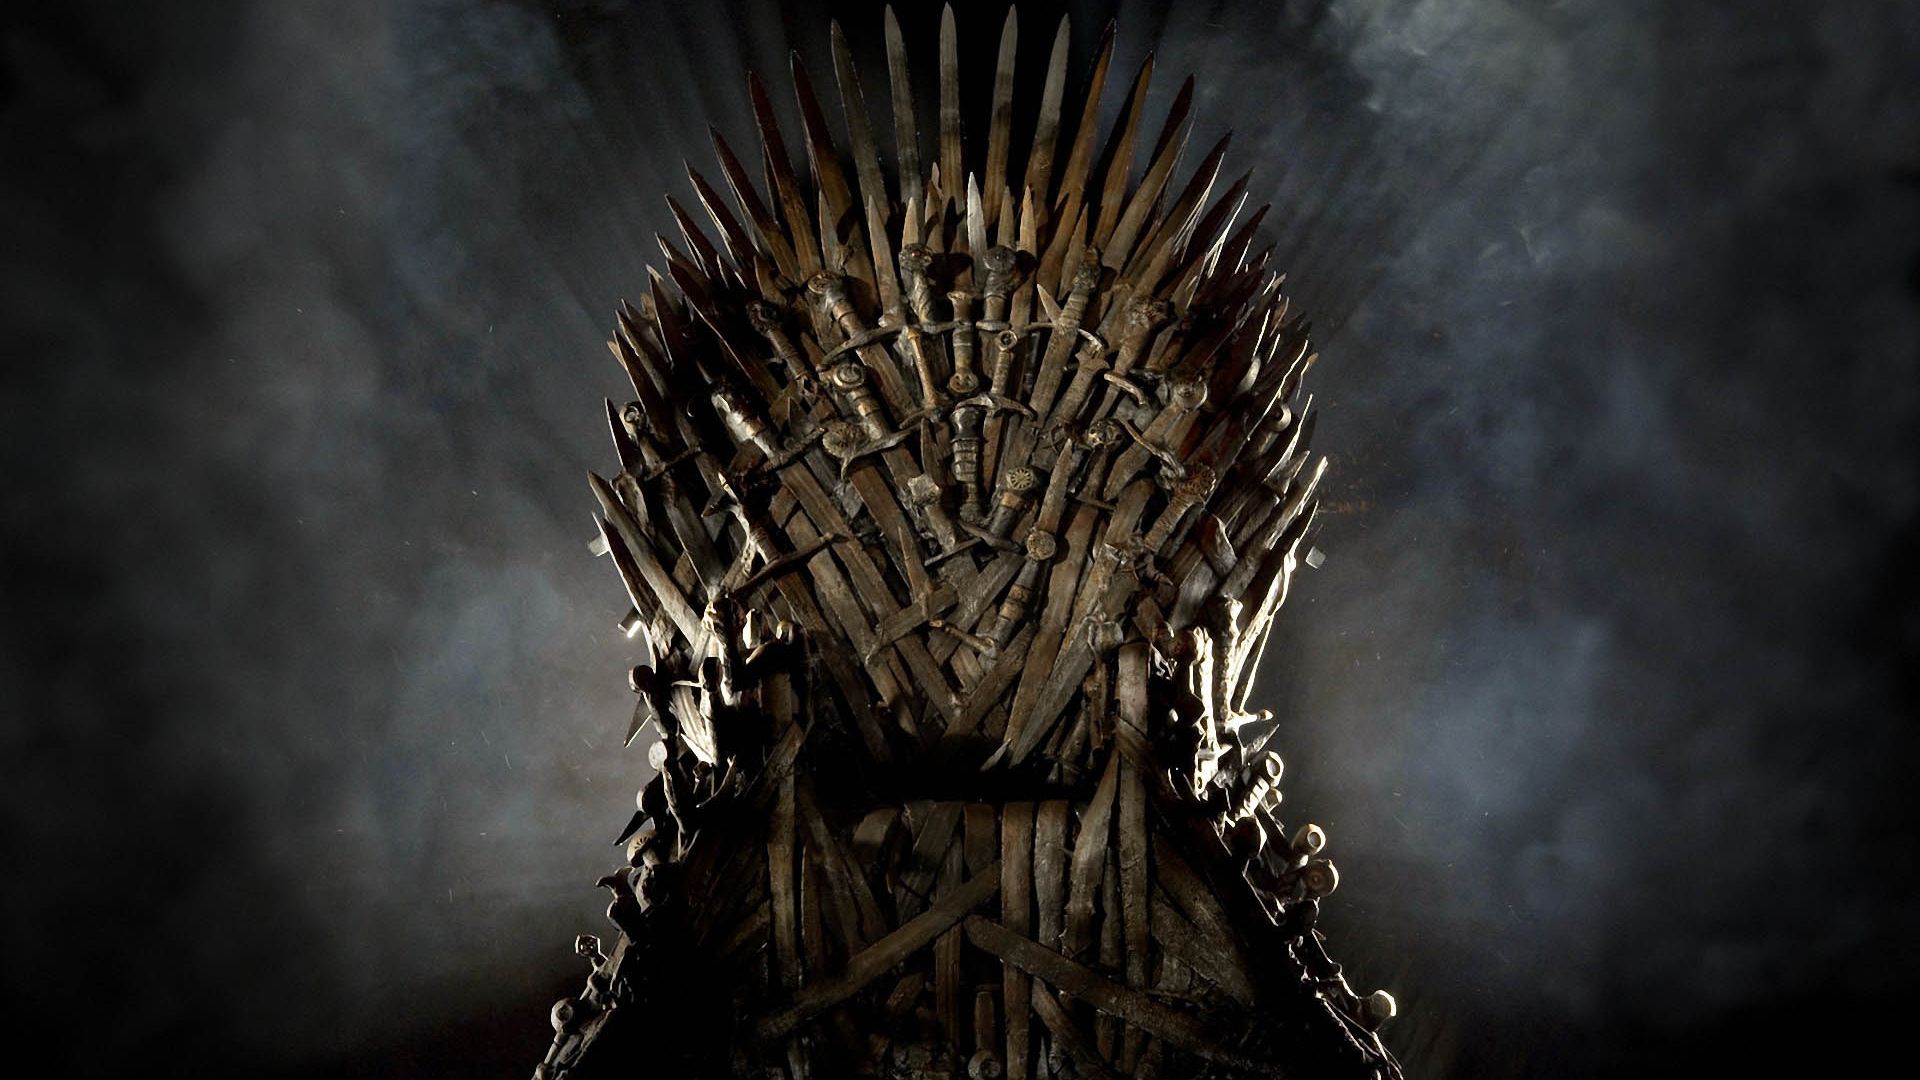 Filmagens de “House of the Dragon”, derivada de “Game of Thrones”, devem  começar em abril